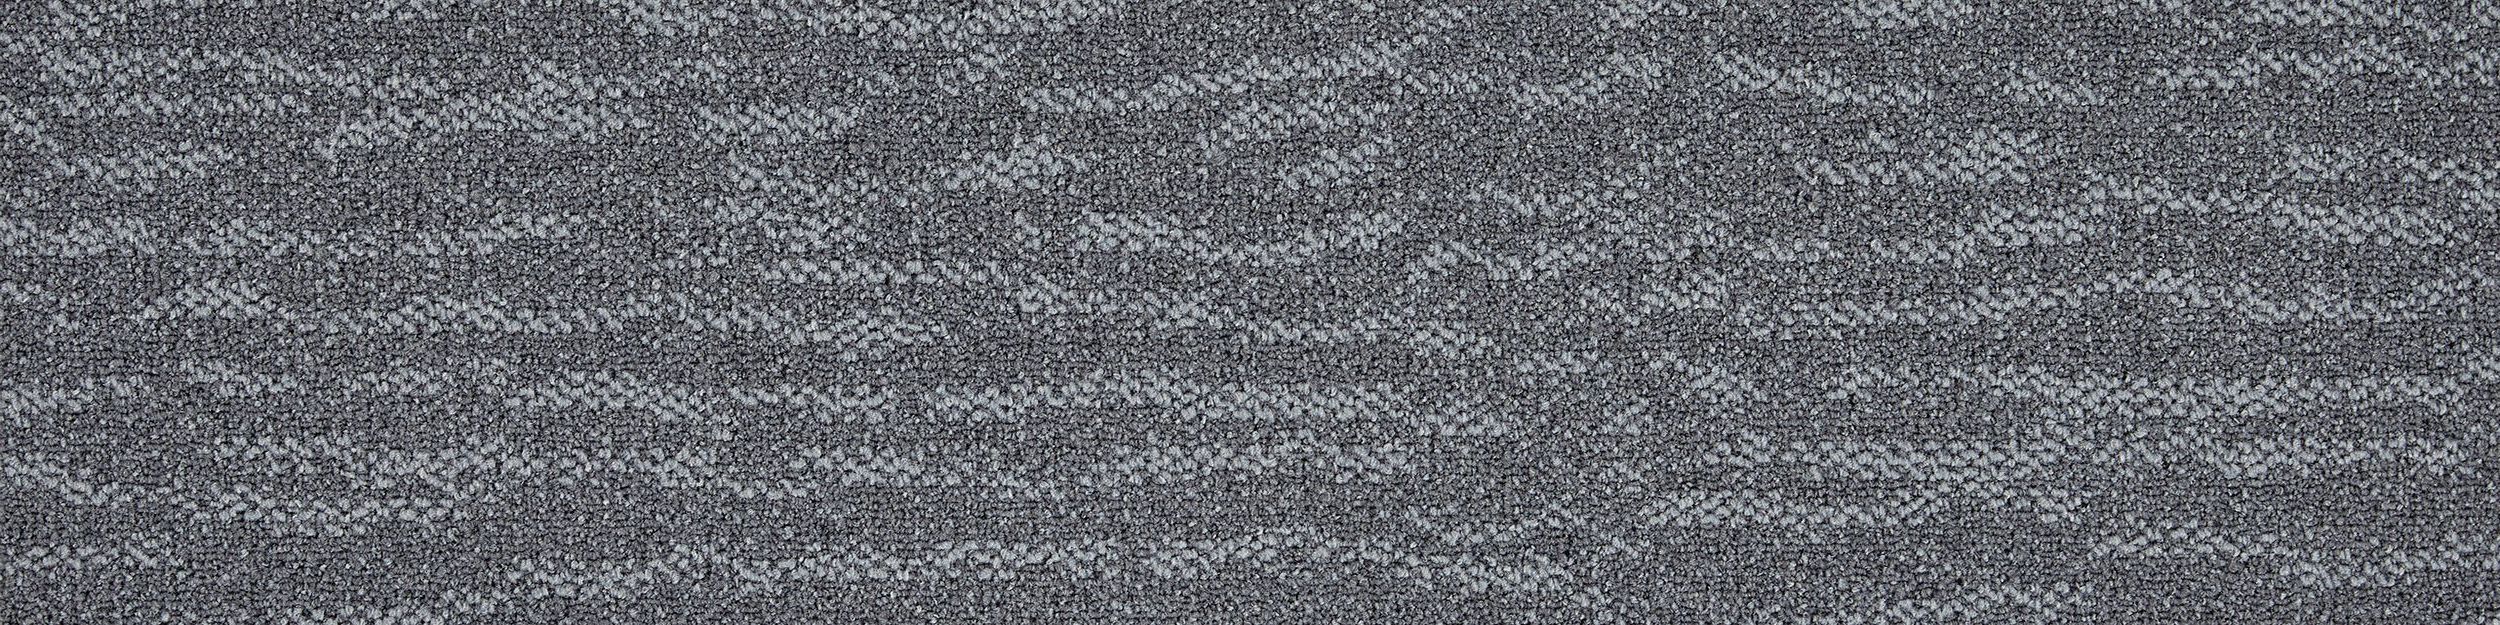 Works Fluid Carpet Tile In Concrete image number 2